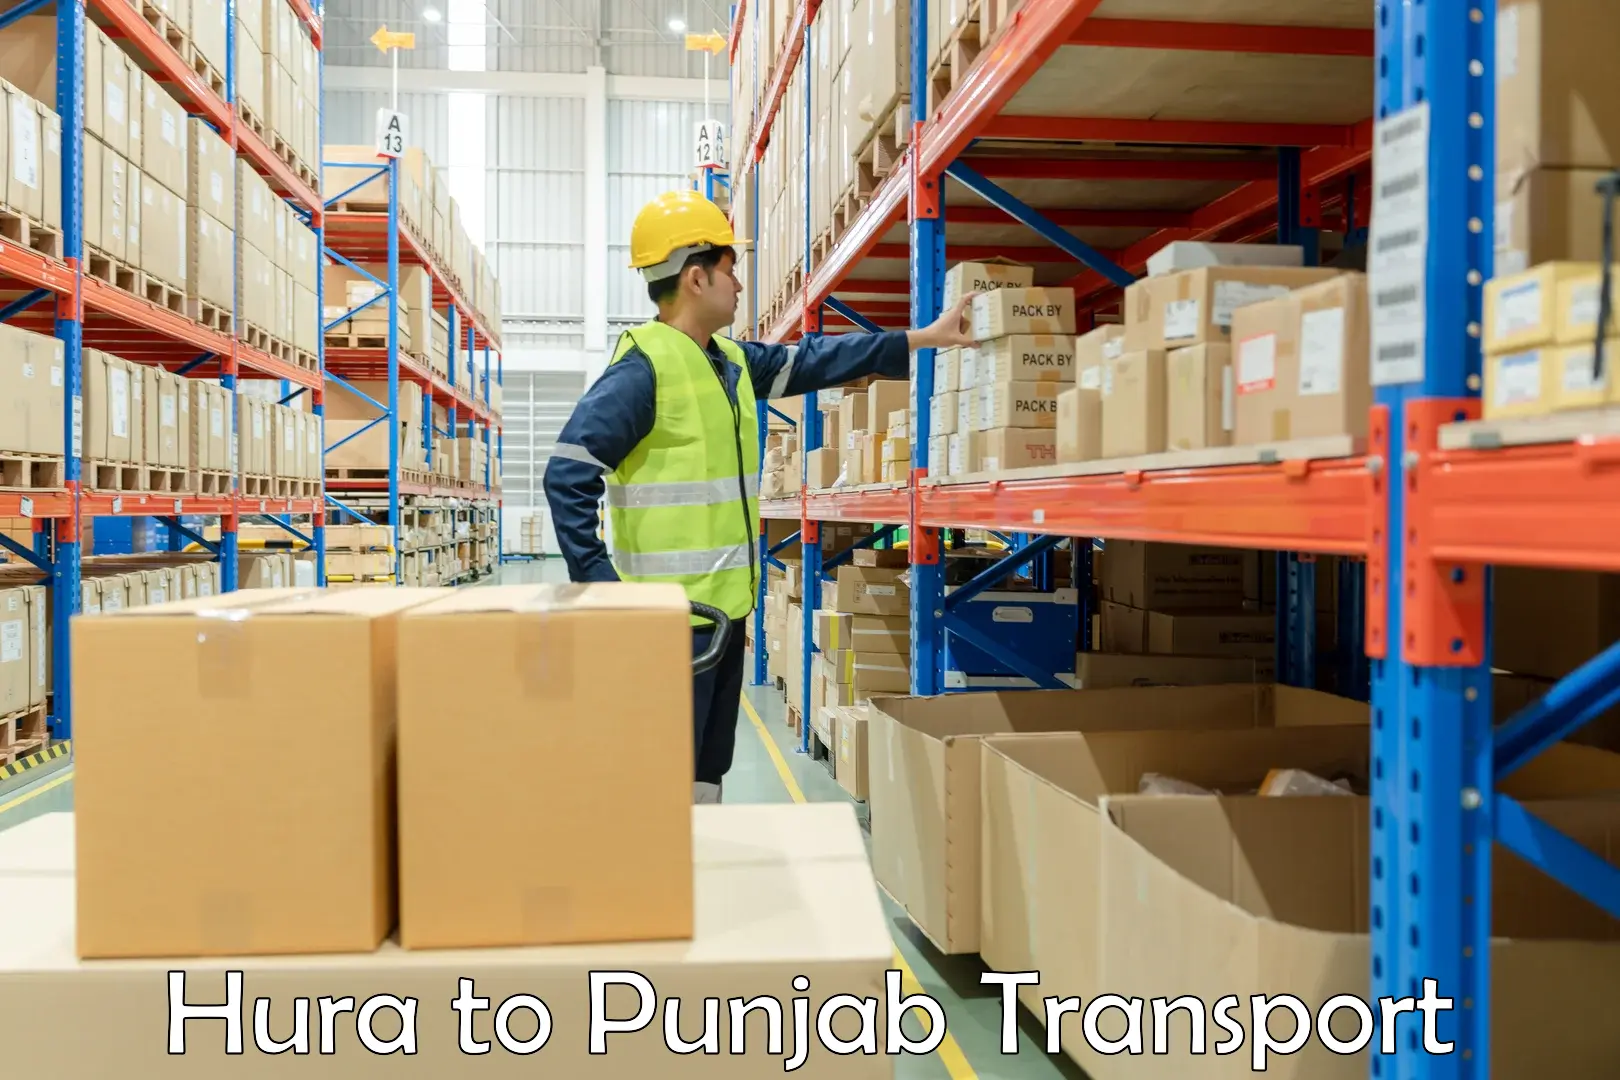 Daily transport service Hura to Punjab